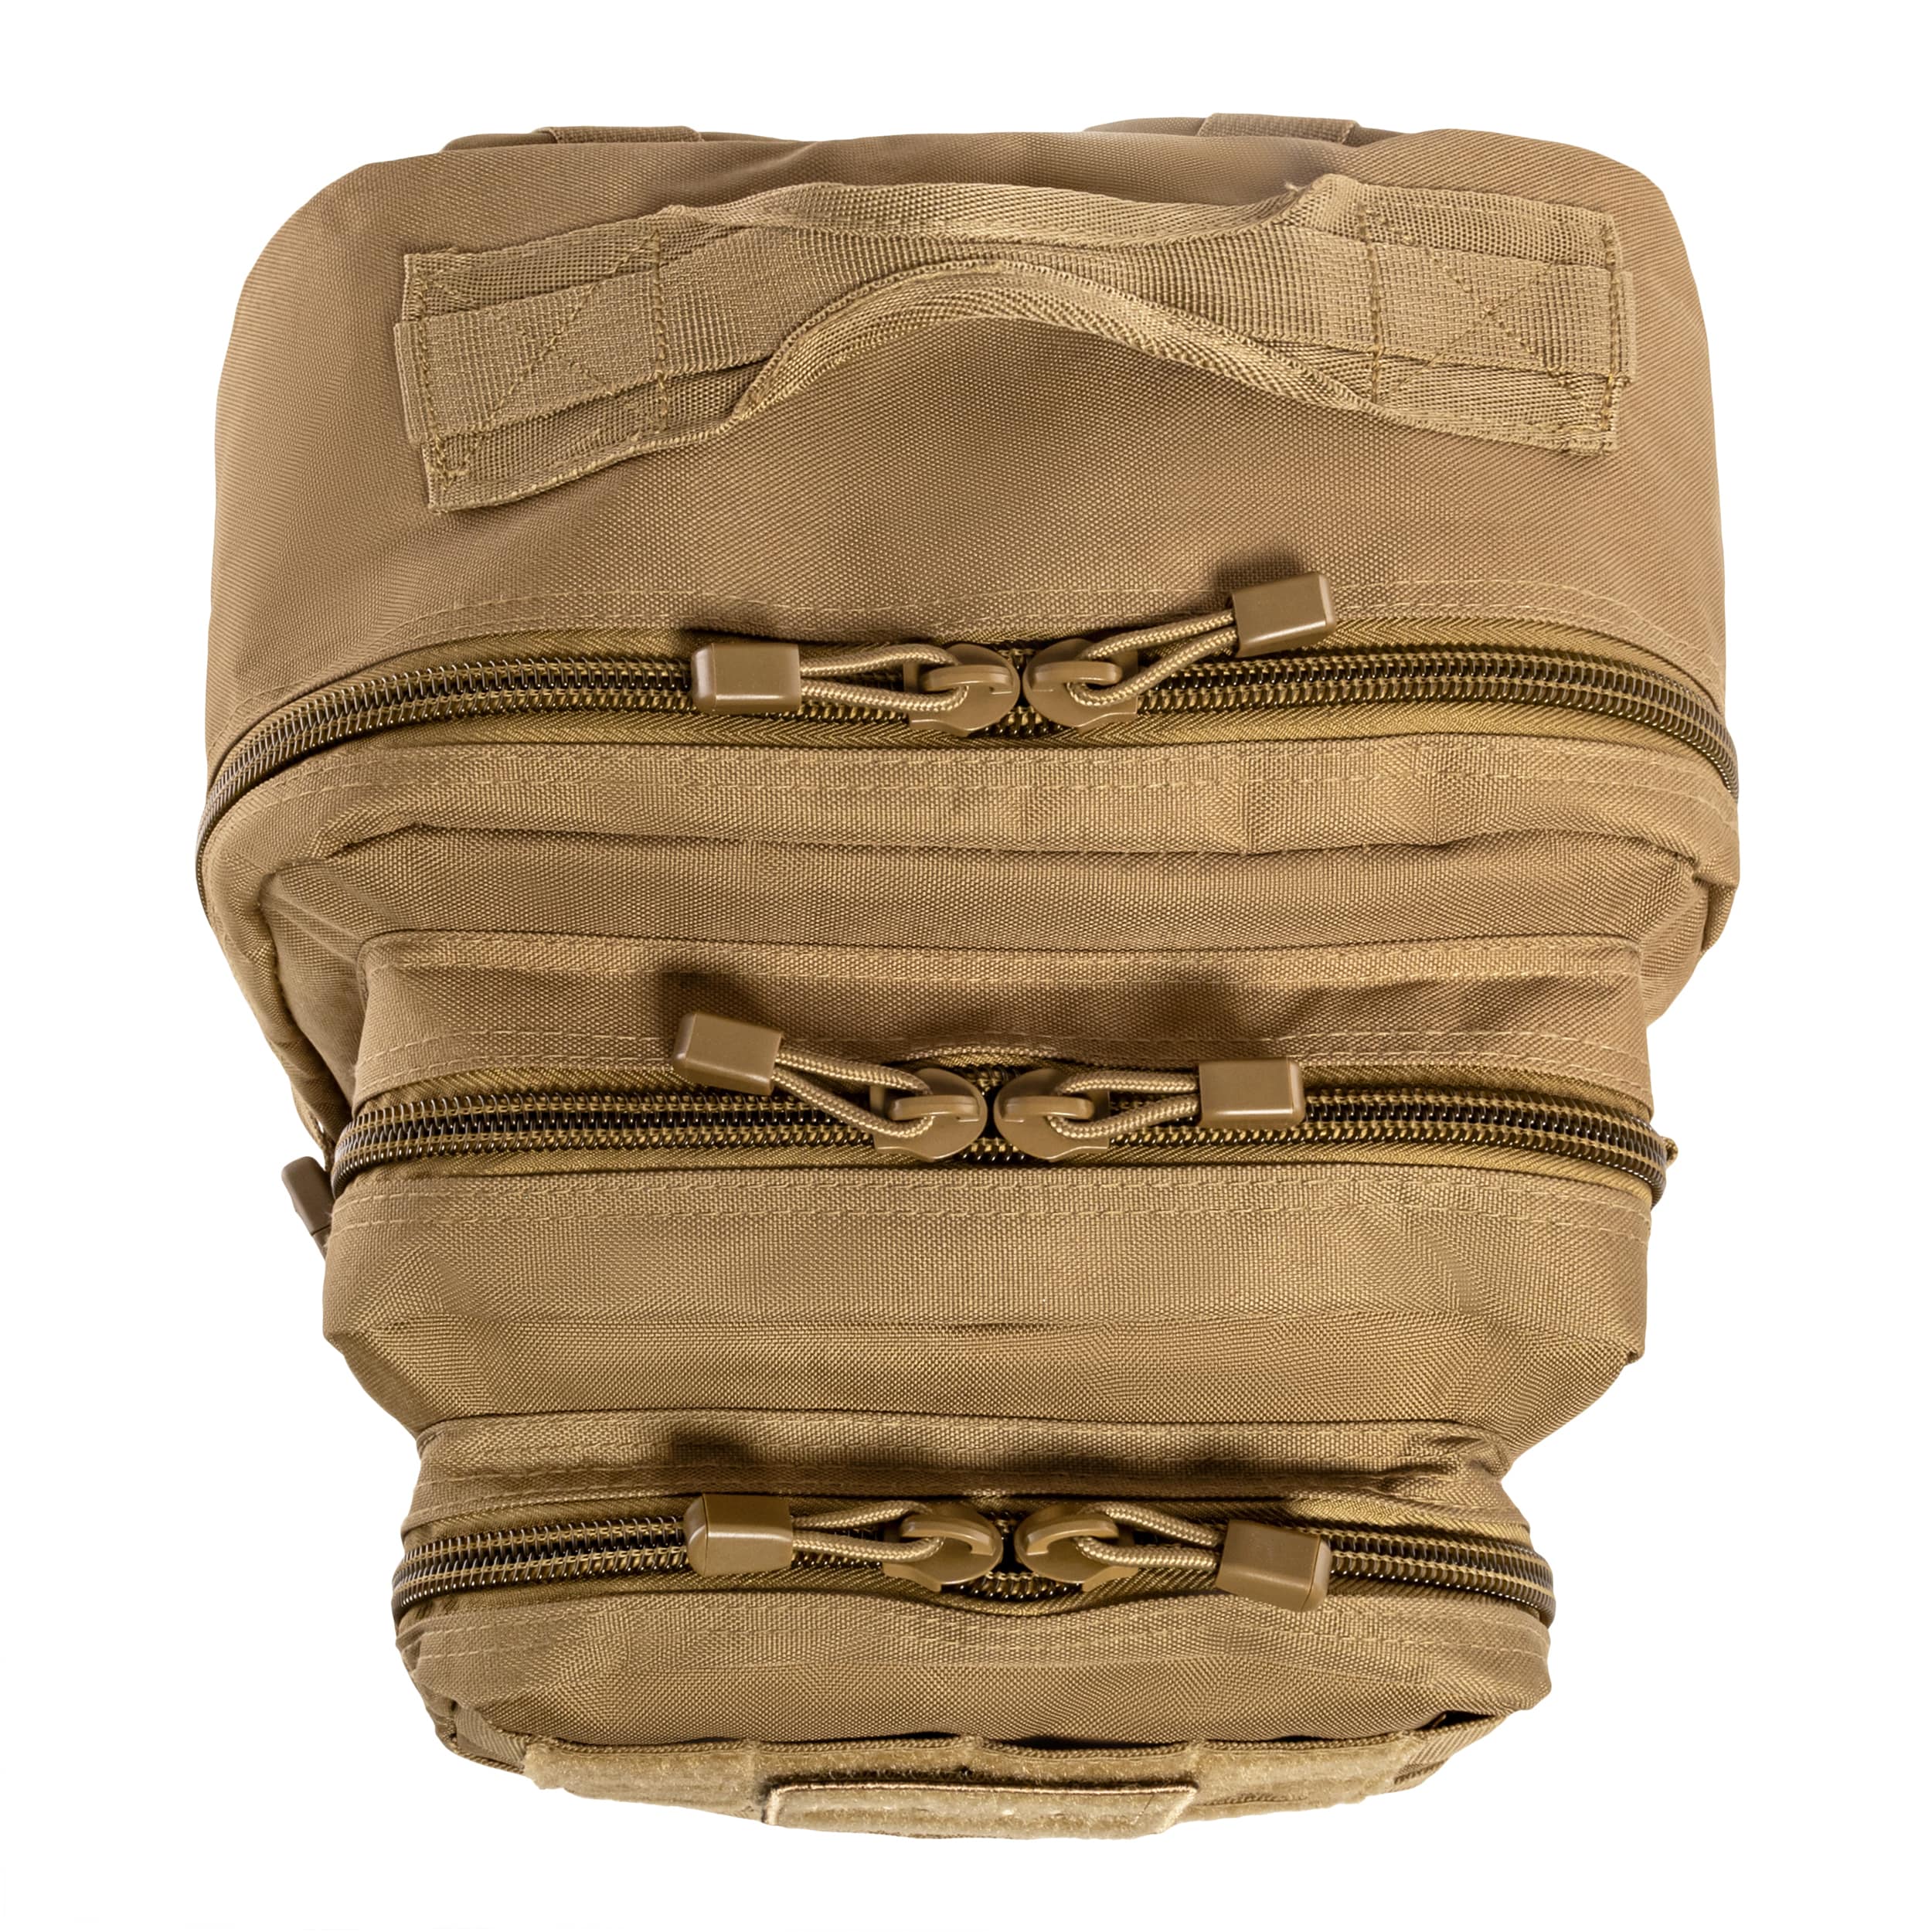 Plecak Mil-Tec Assault Pack Large 36 l - Coyote Brown 